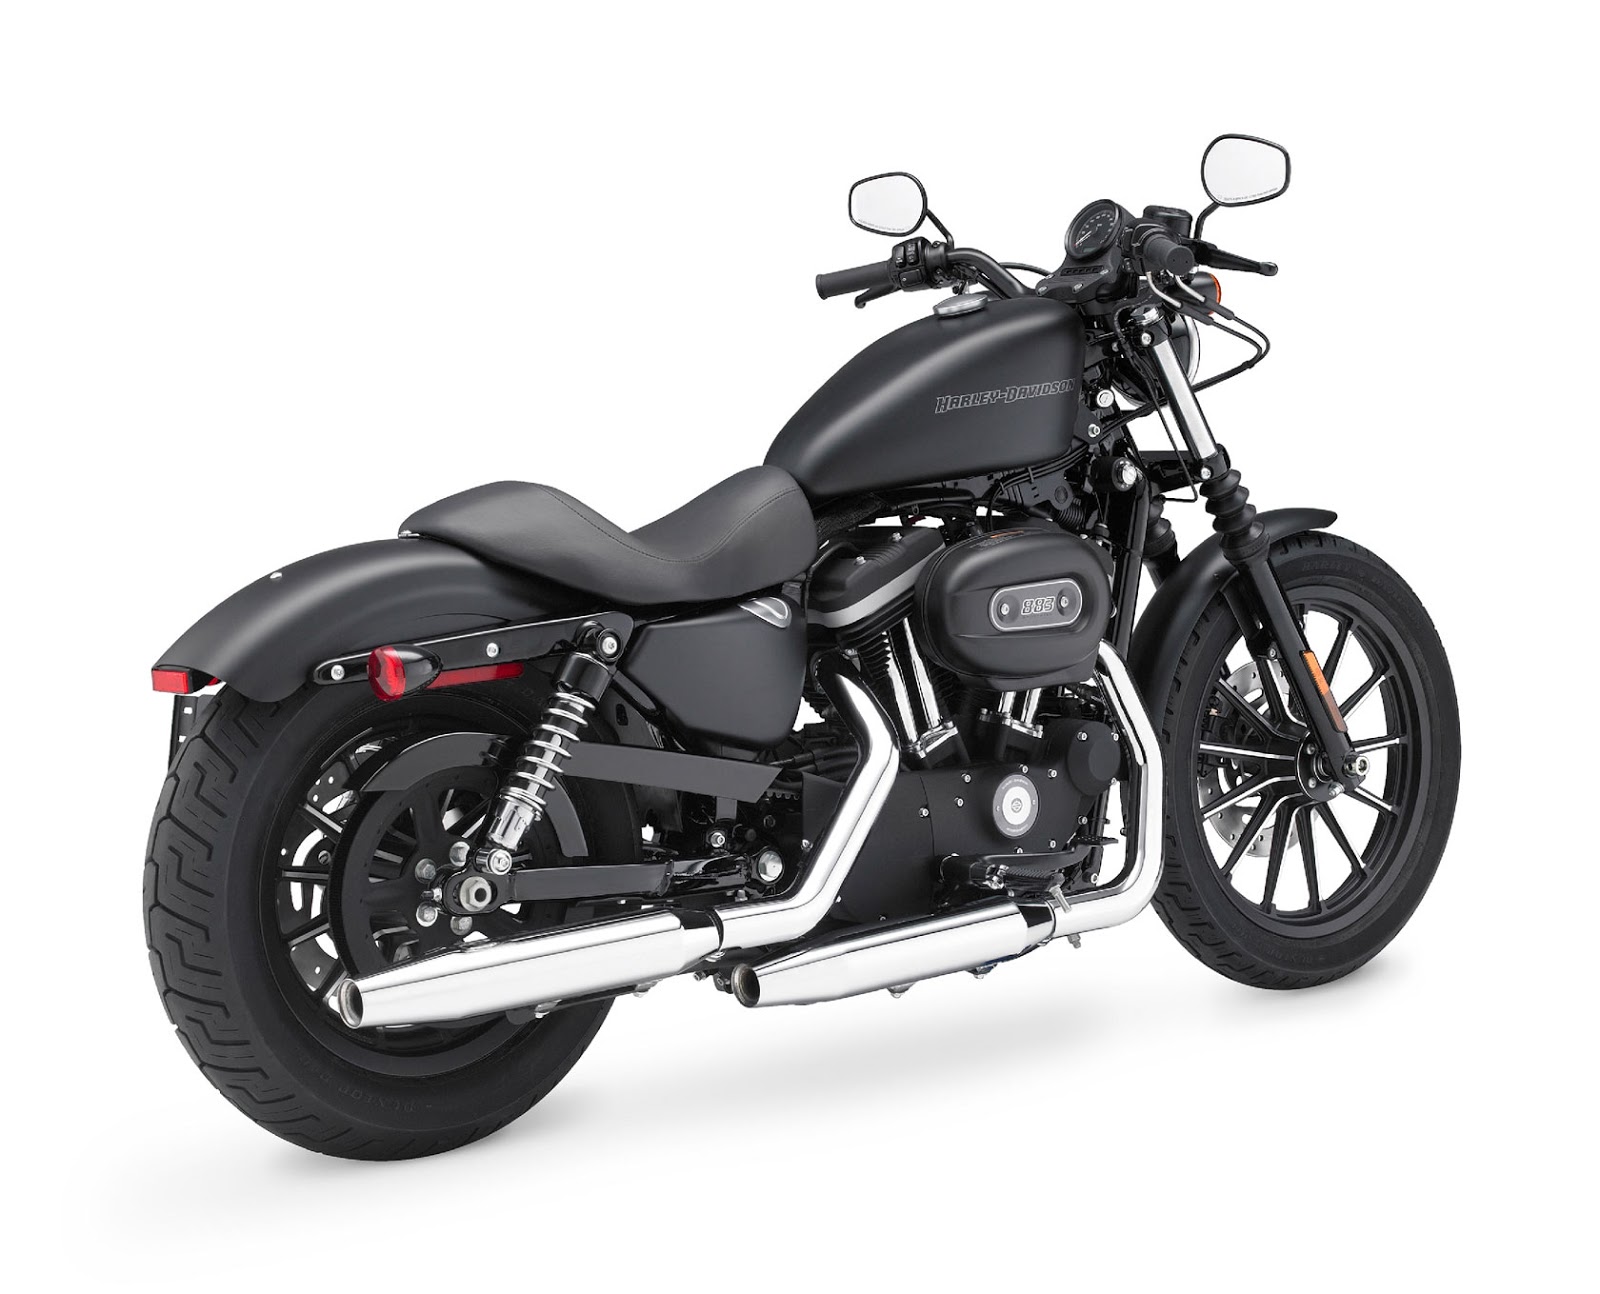 Harley Sportster 1200